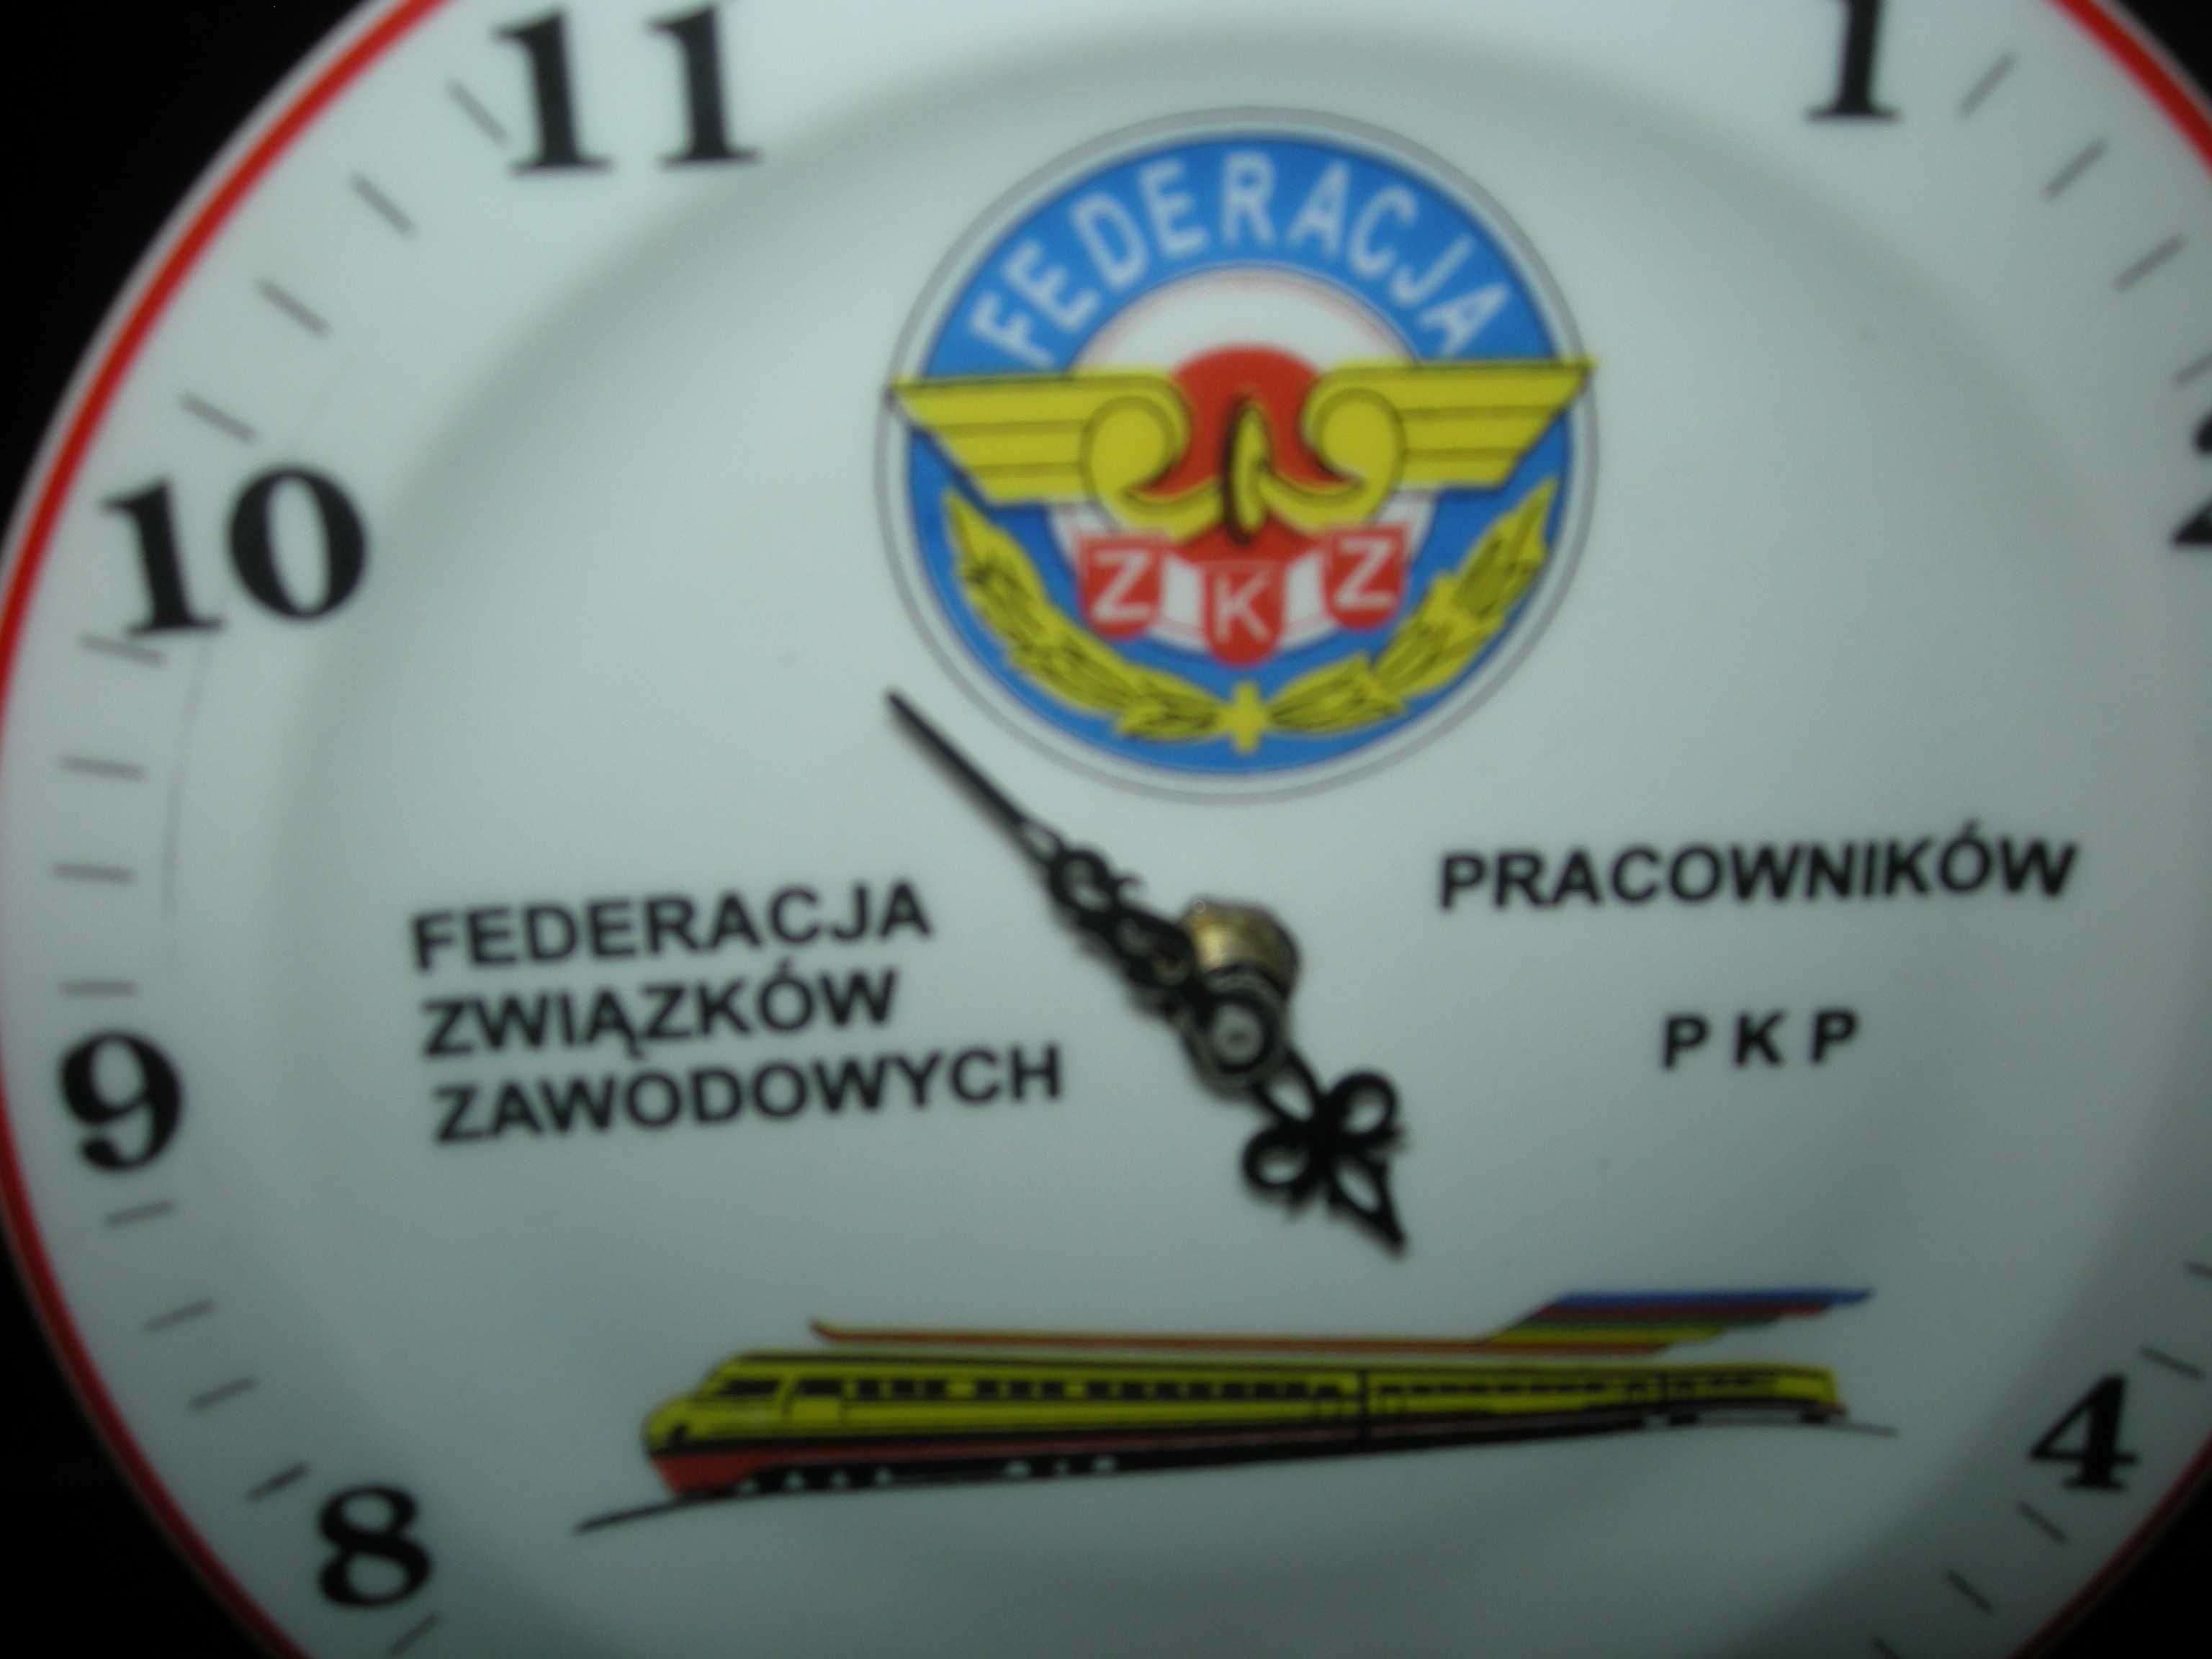 PKP zegar Federacja Związków Zawodowych Pracowników PKP